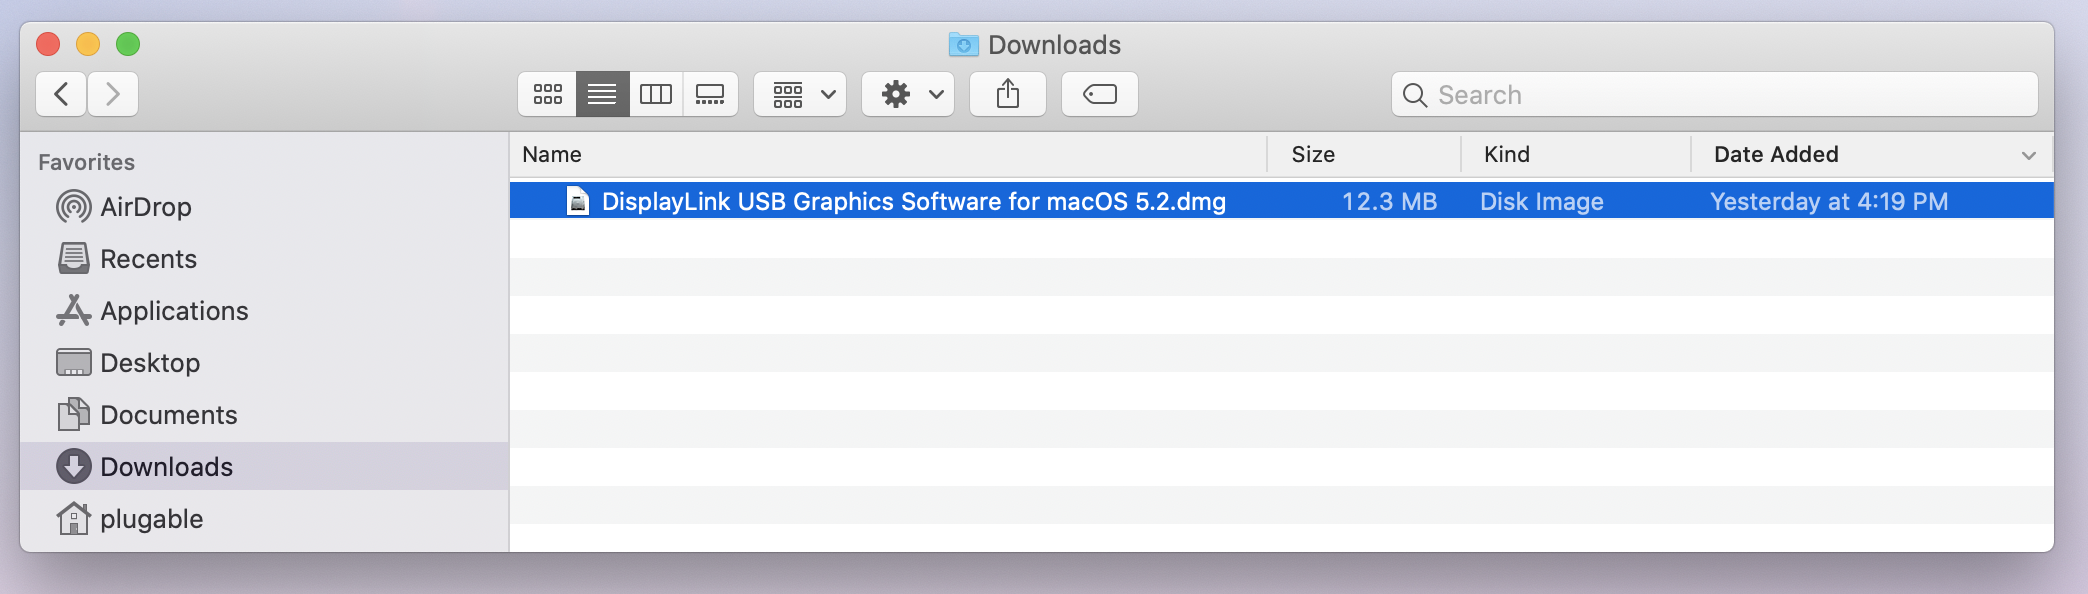 speeding up file sharing mac os